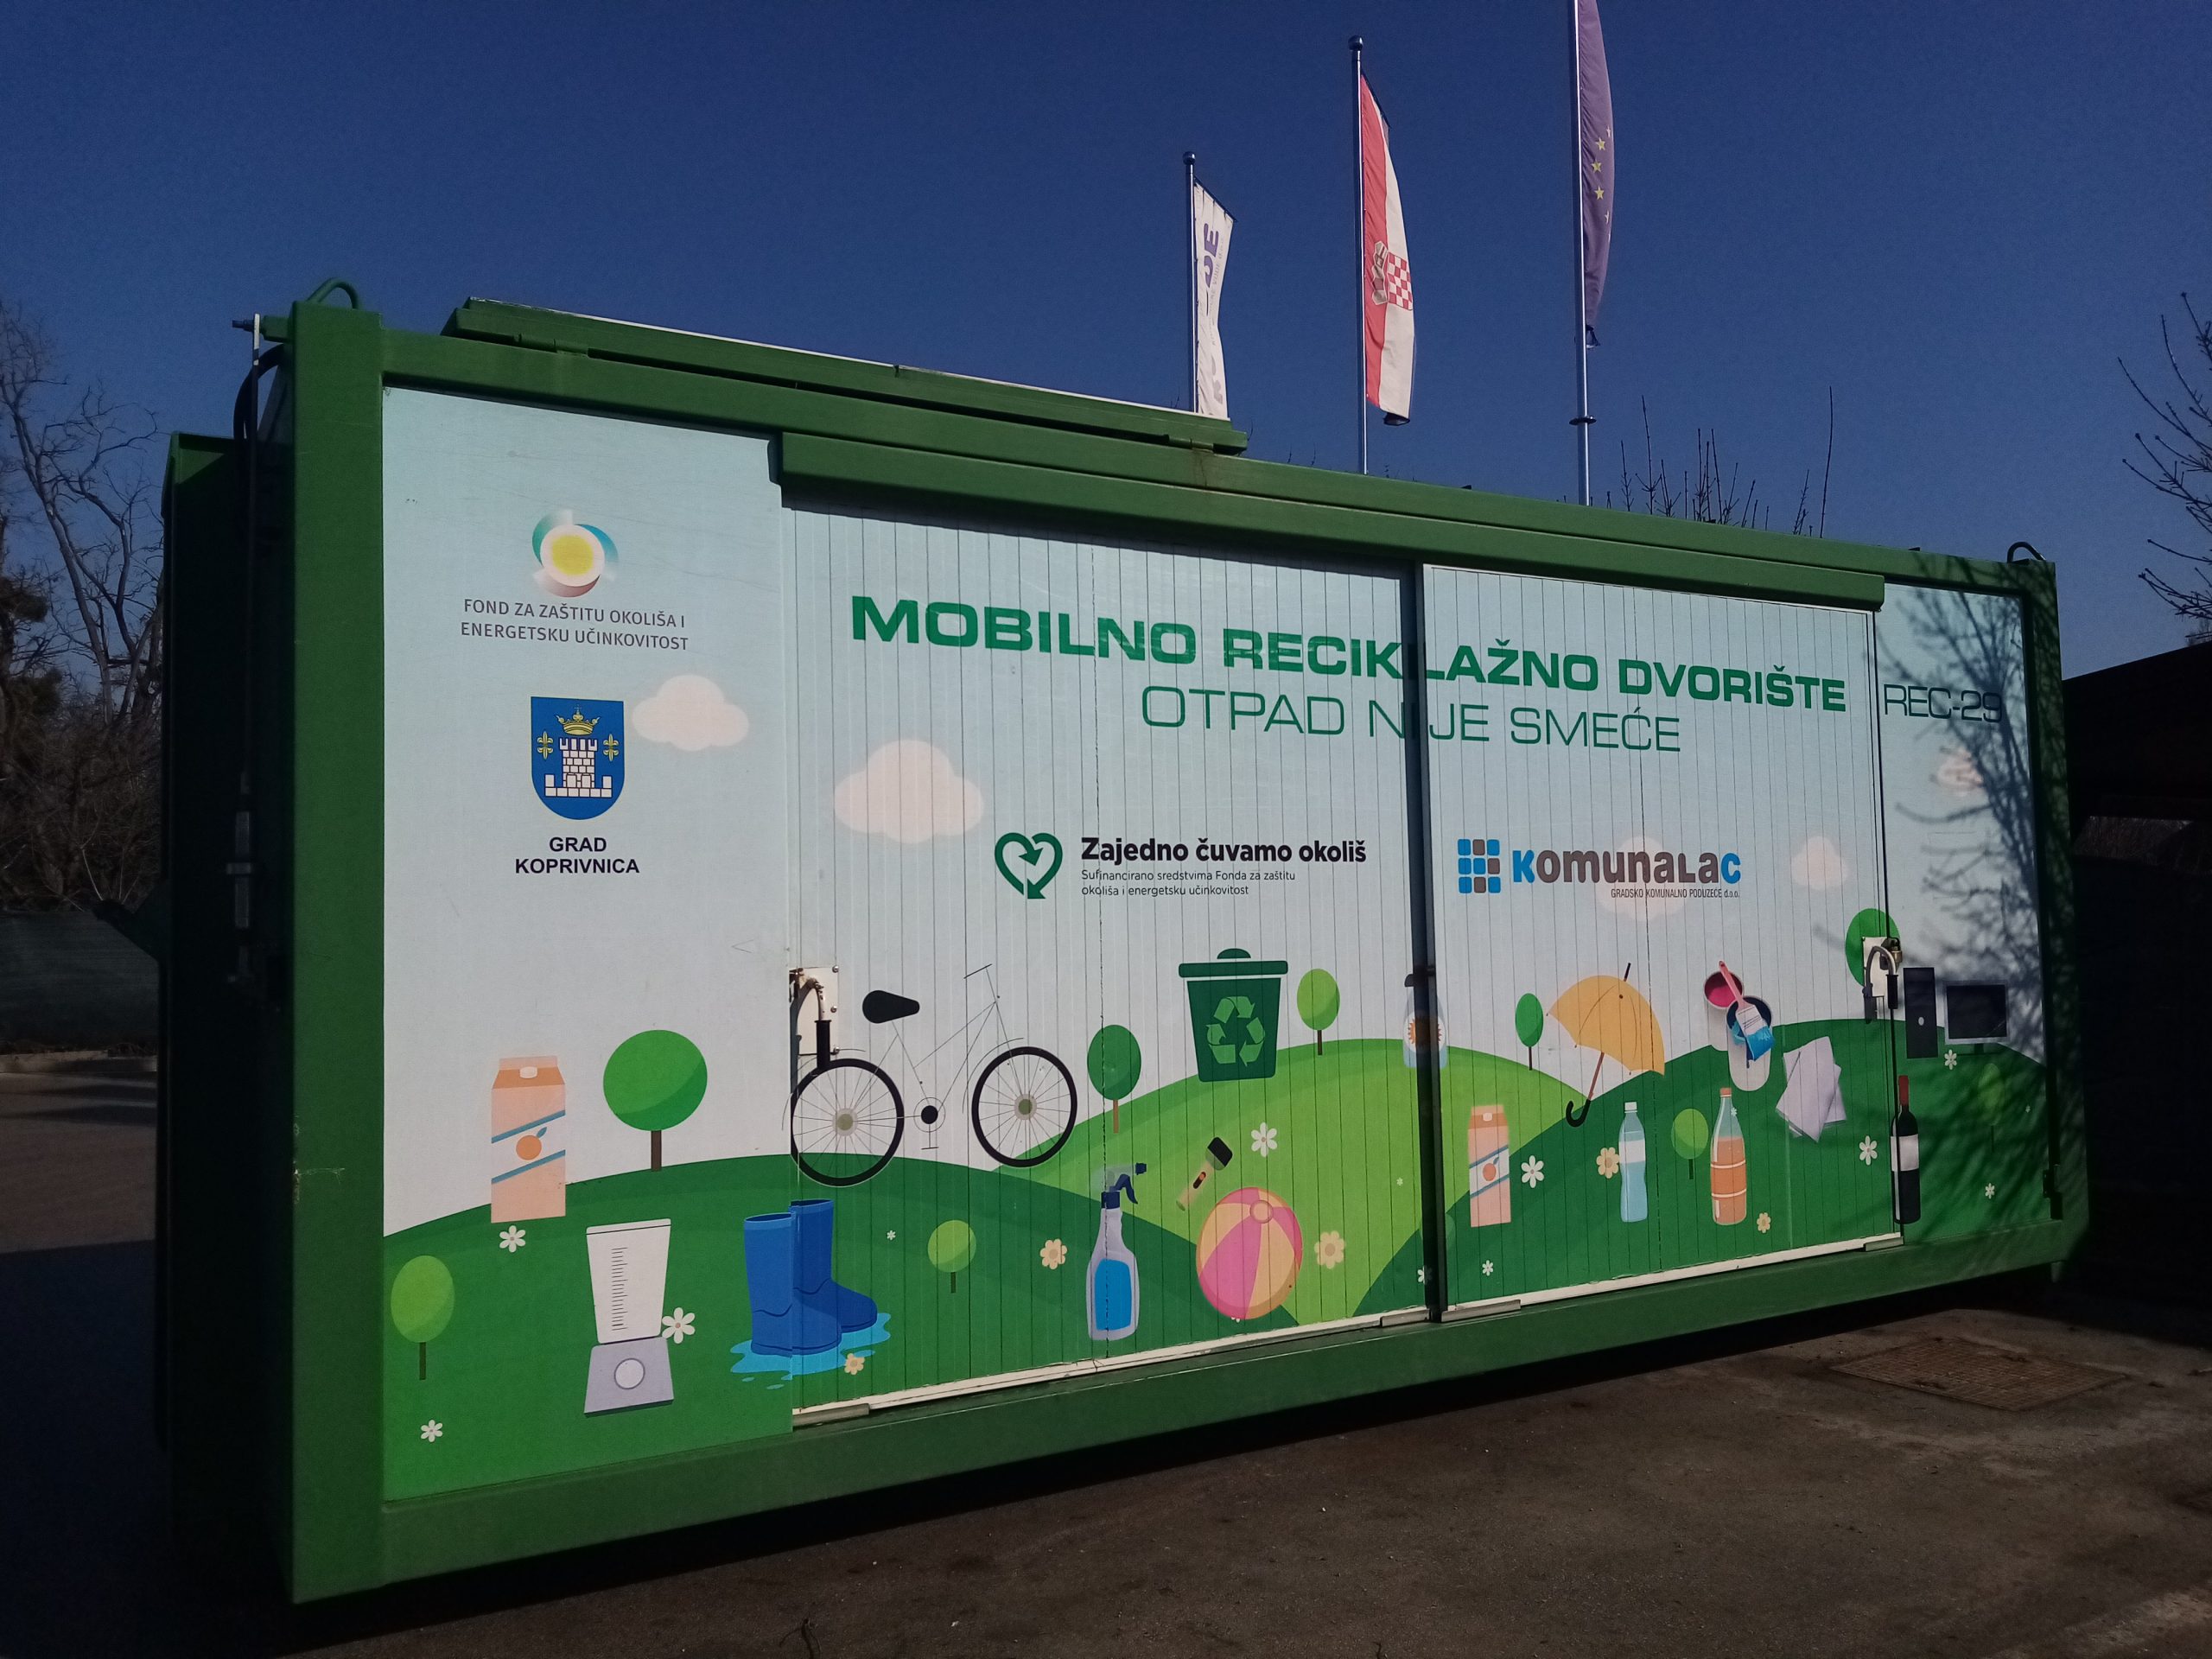 Mobilno reciklažno dvorište u četvrtak, 12. svibnja, nalazit će se u Draganovcu kod dječjeg igrališta